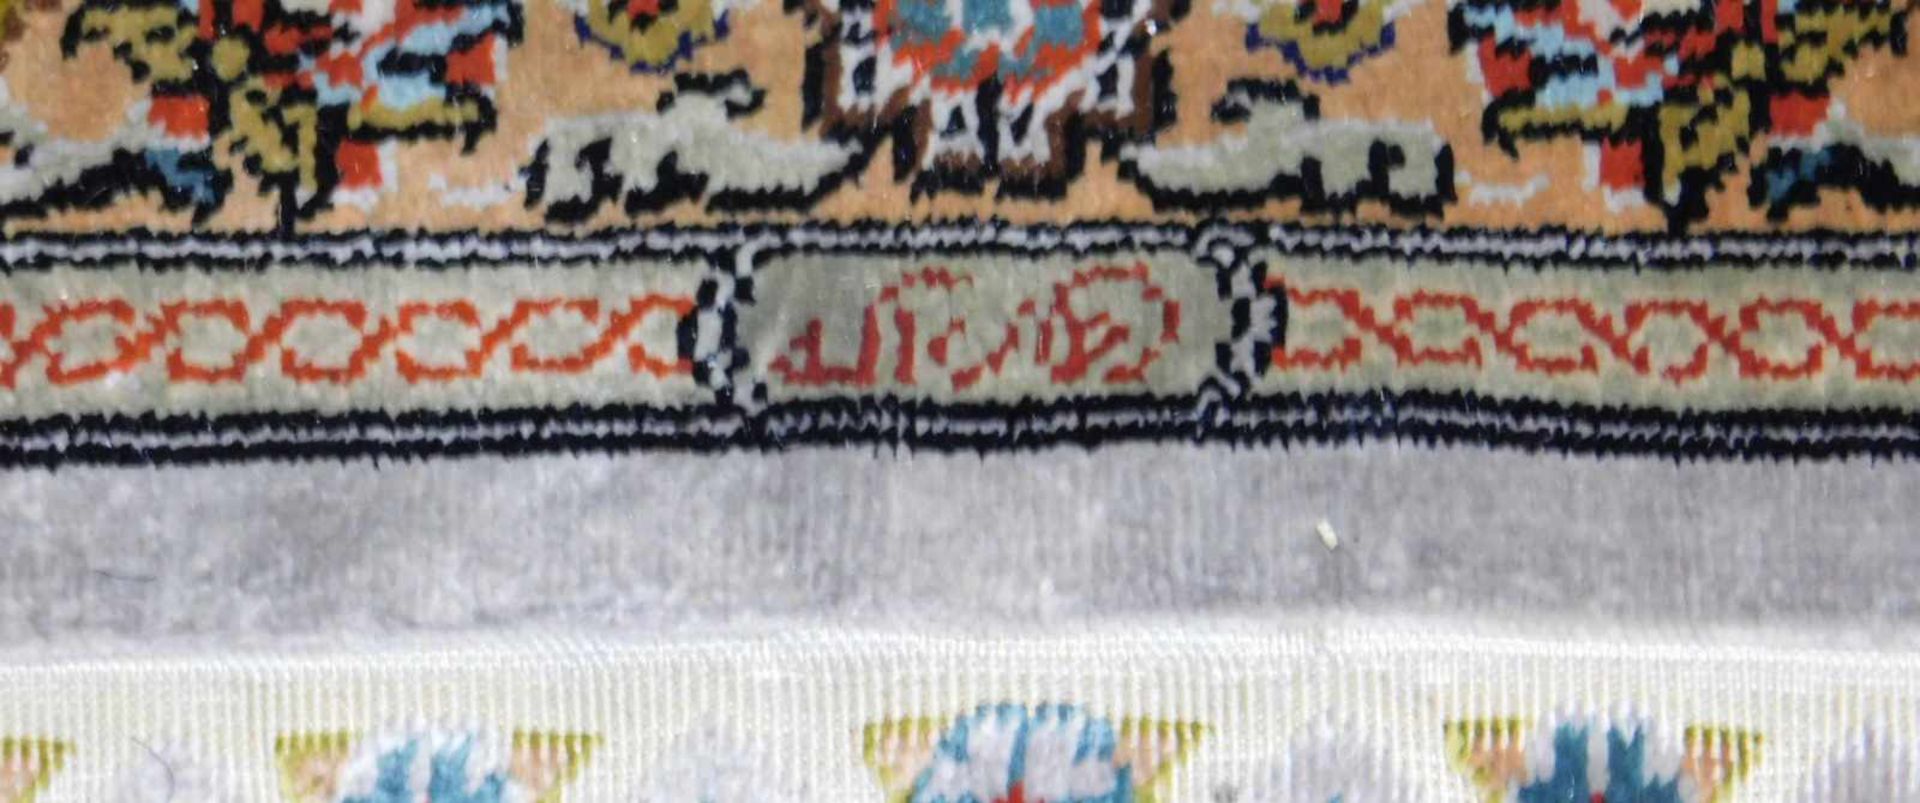 Herke Signiert Gebetsteppich. Türkei. Seide auf Seide. Selten feine Knüpfung. 159 cm x 93 cm. - Bild 5 aus 7